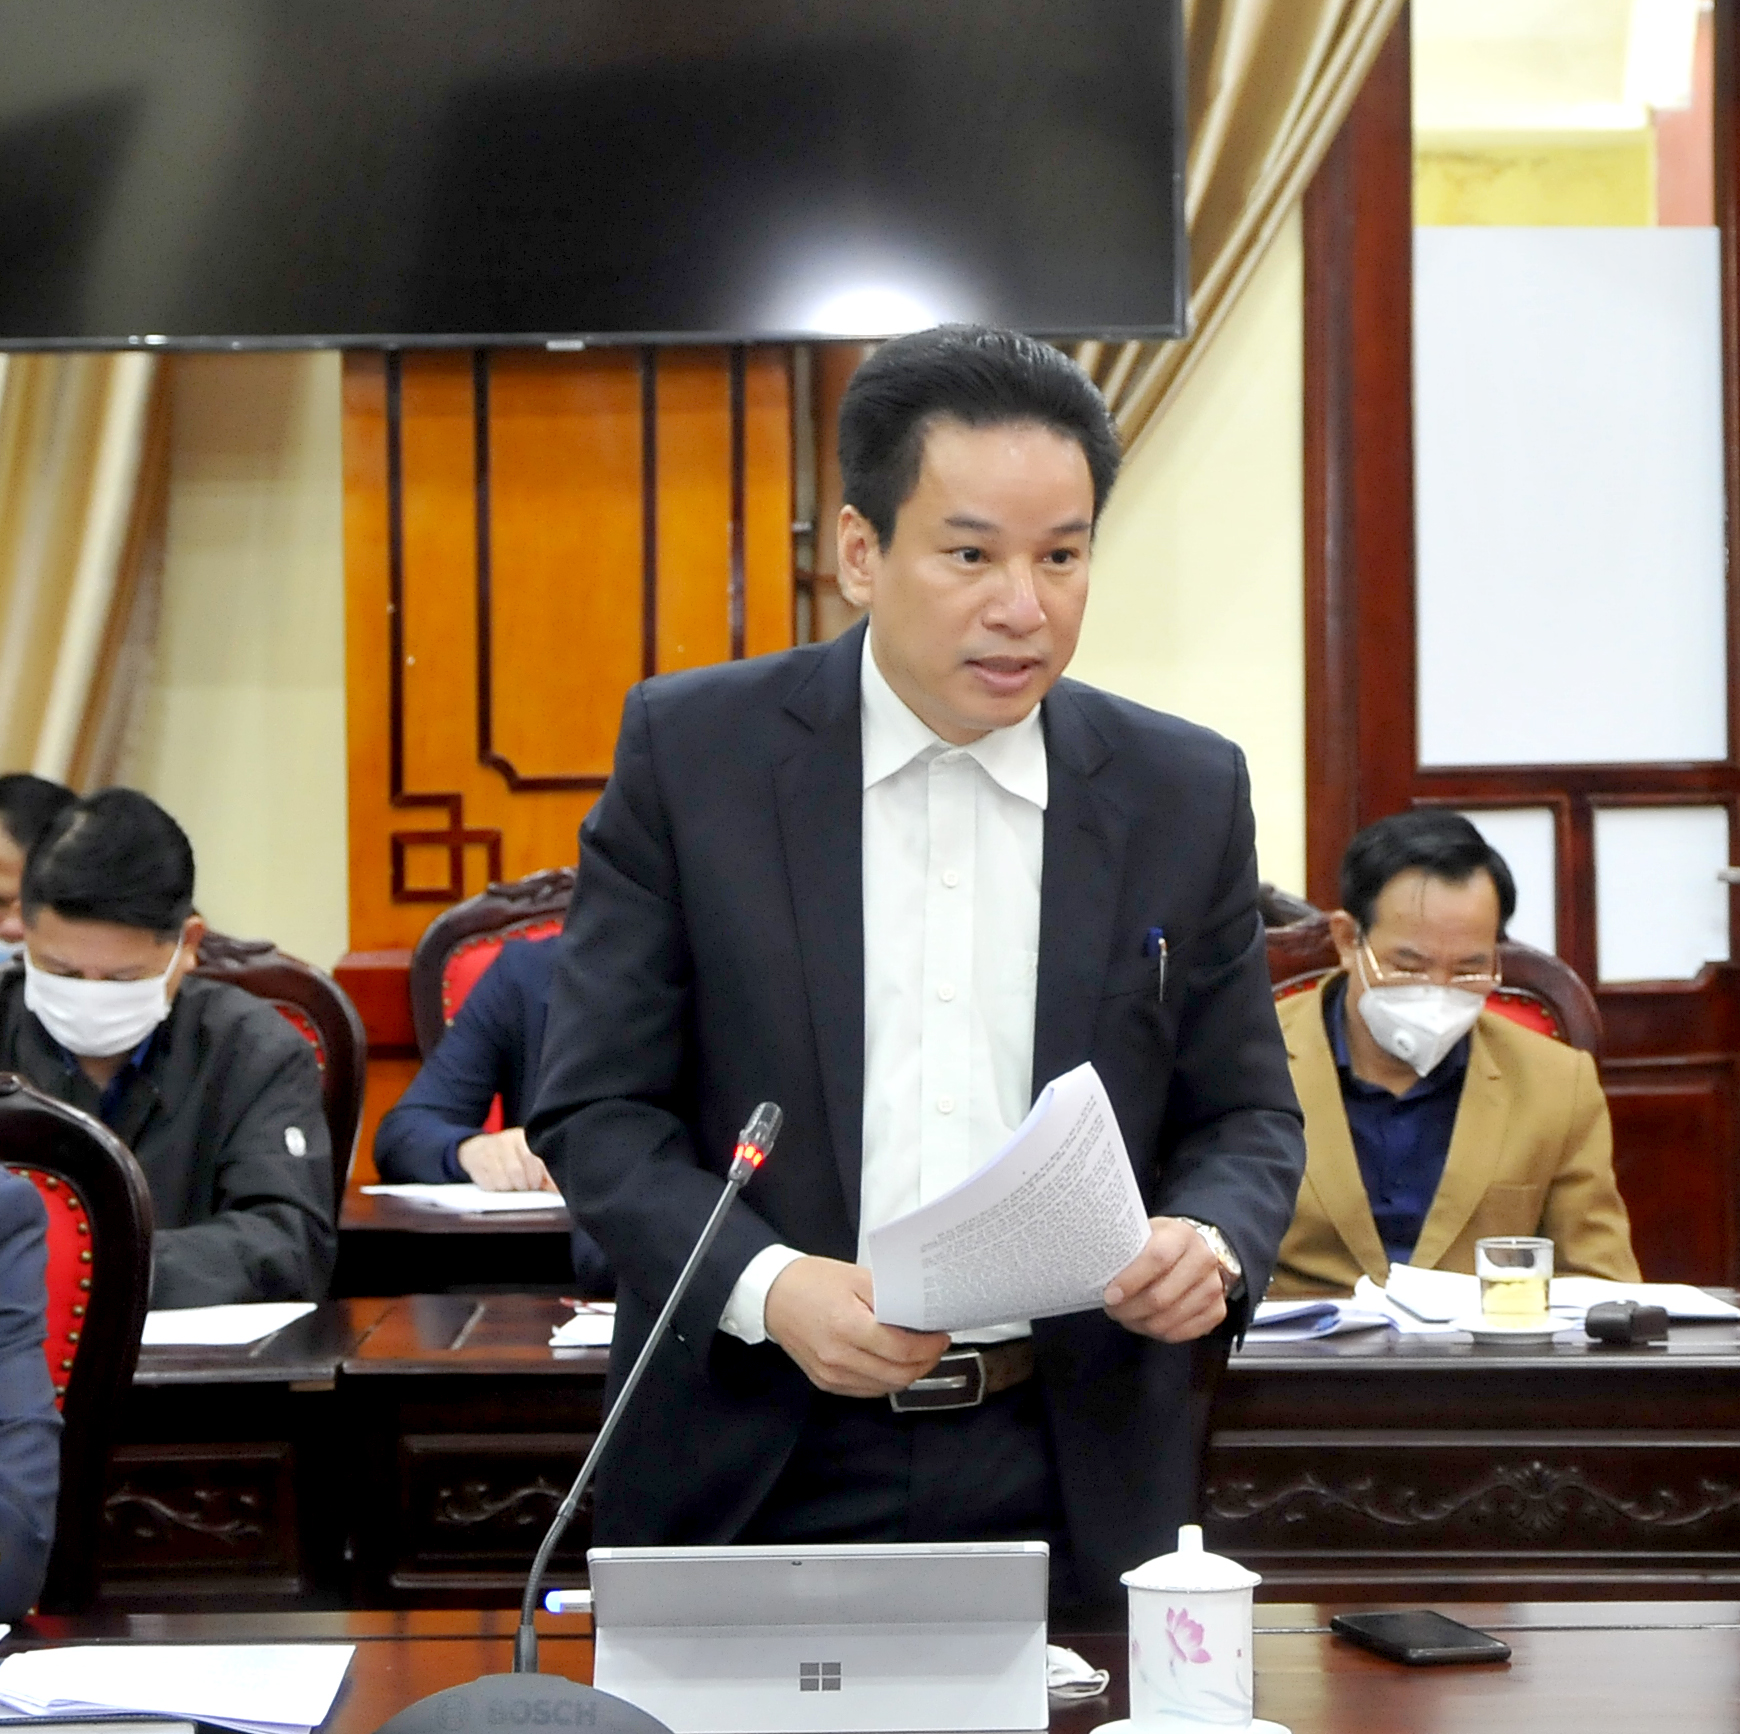 Giám đốc Sở Giáo dục và Đào tạo Nguyễn Thế Bình làm rõ một số nội dung liên quan đến công tác giáo dục.